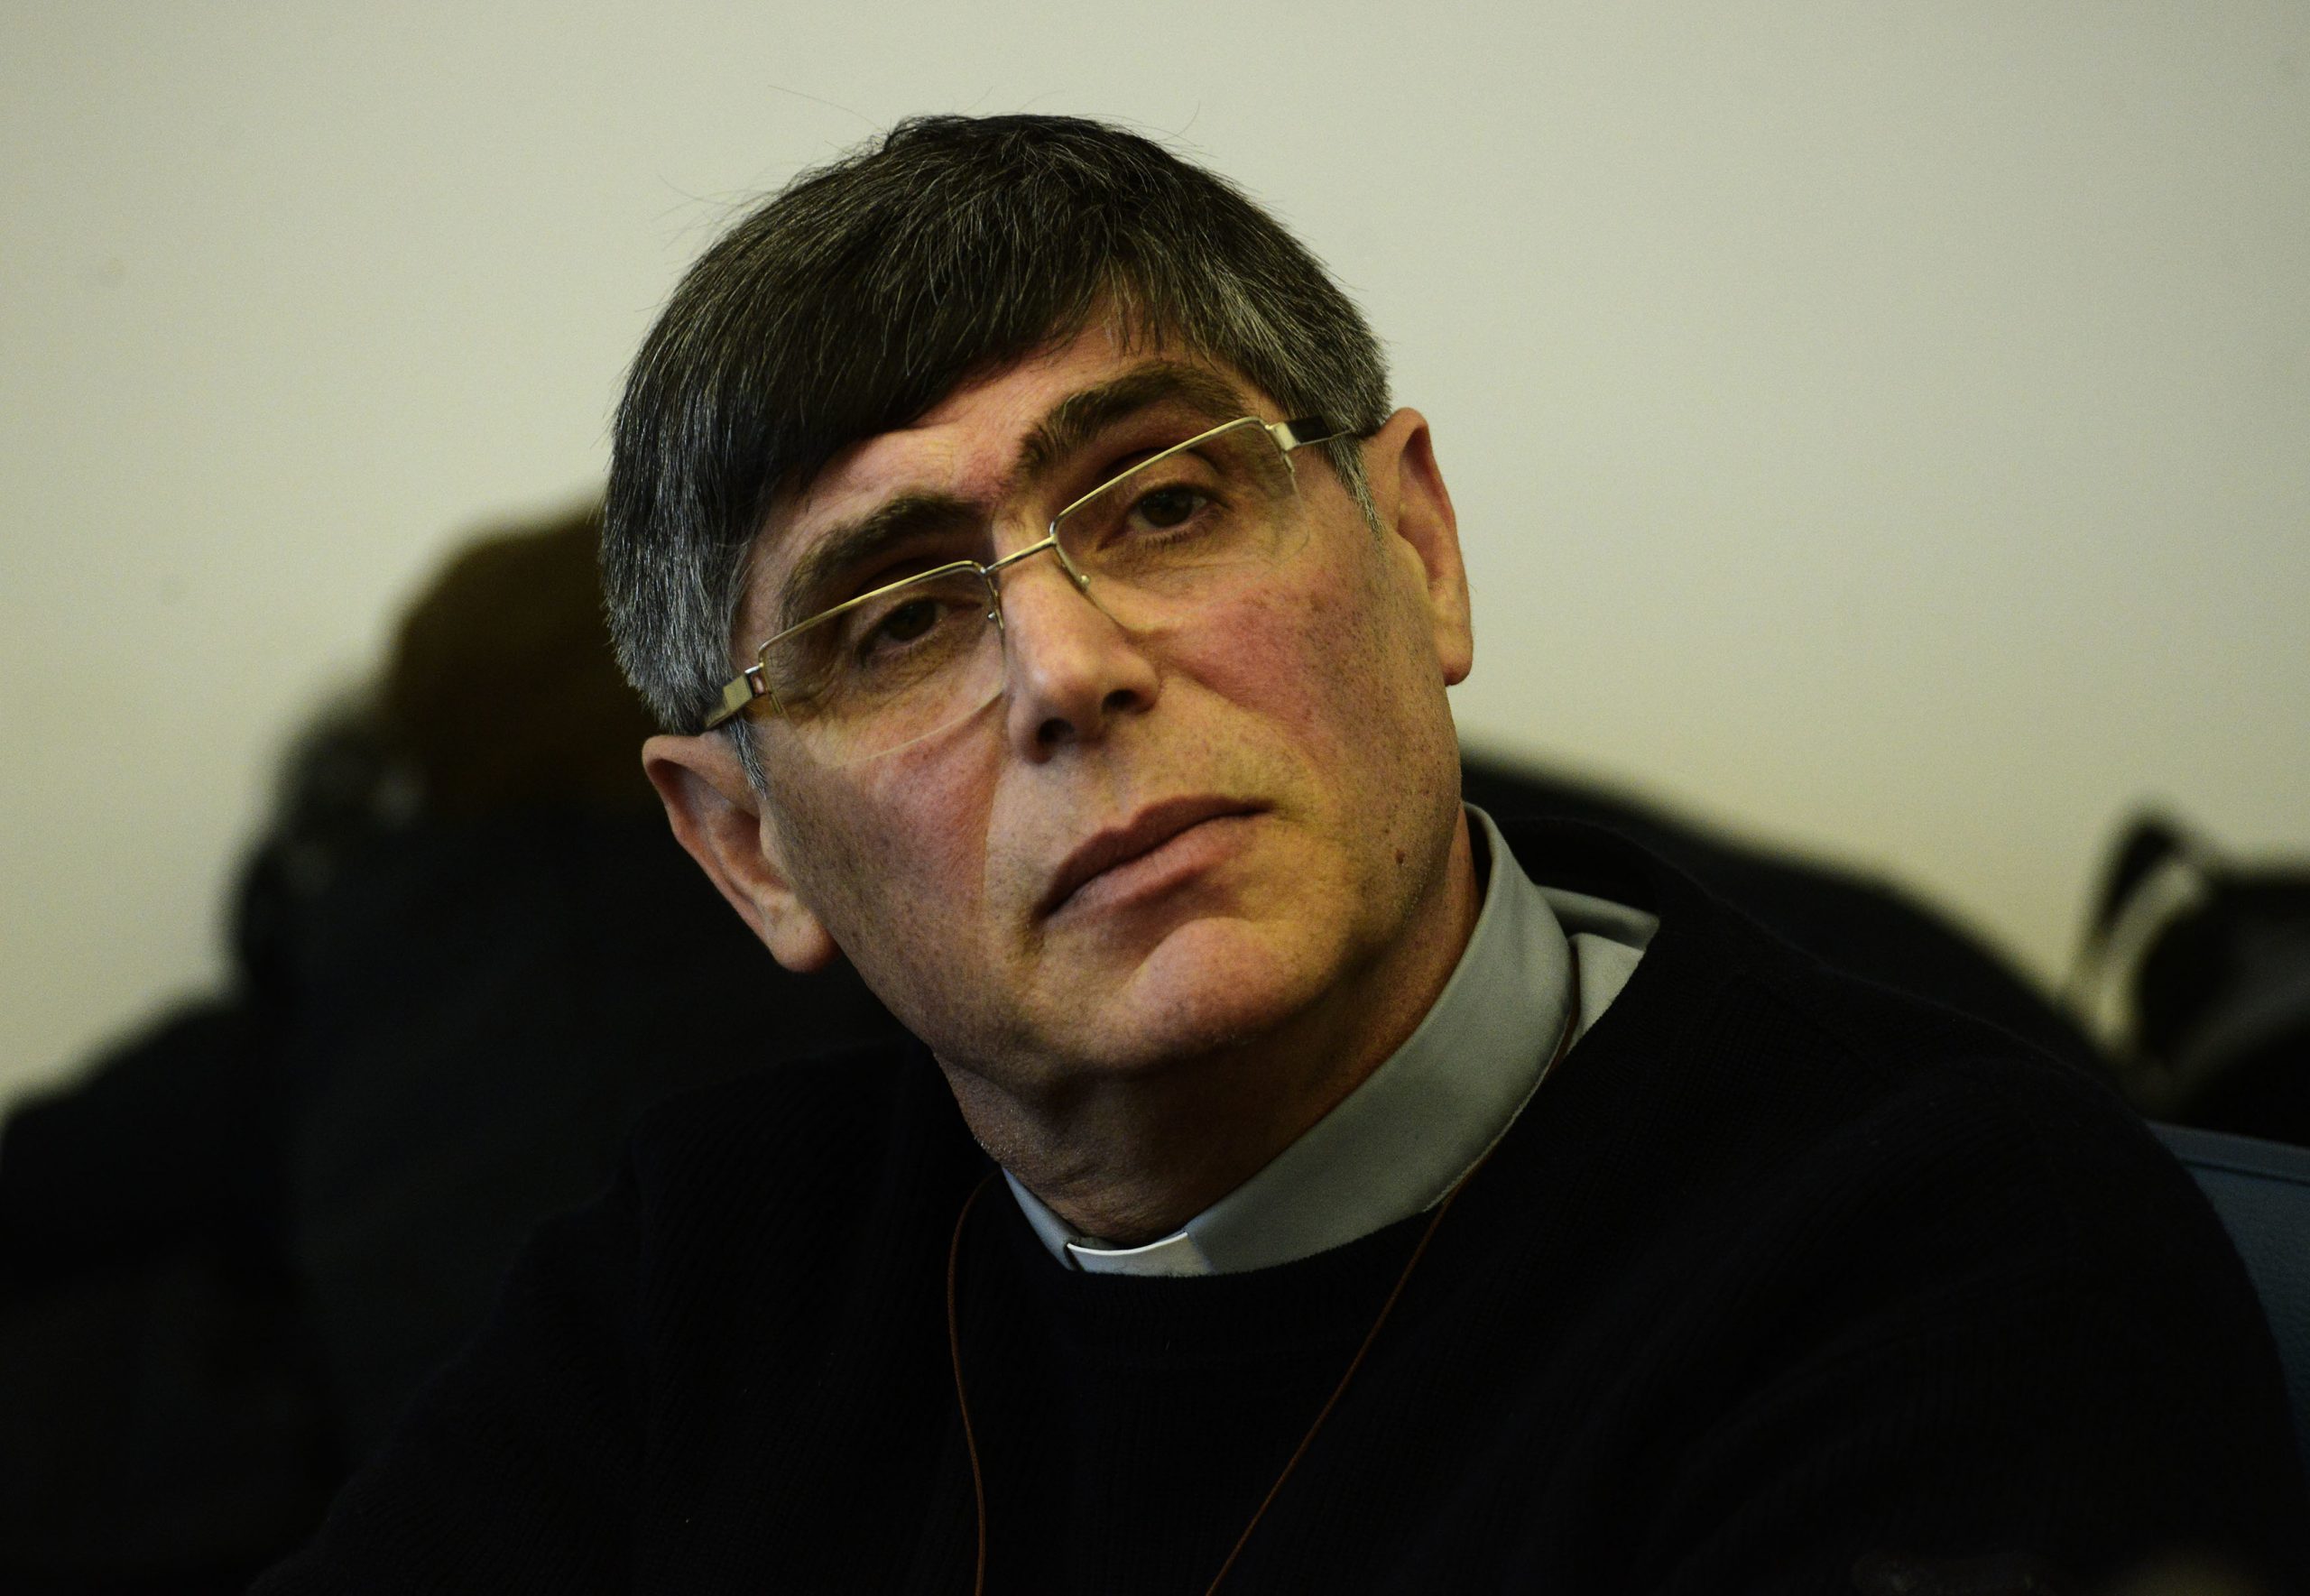 Padre Maurizio Patriciello.Priest Maurizio Patriciello